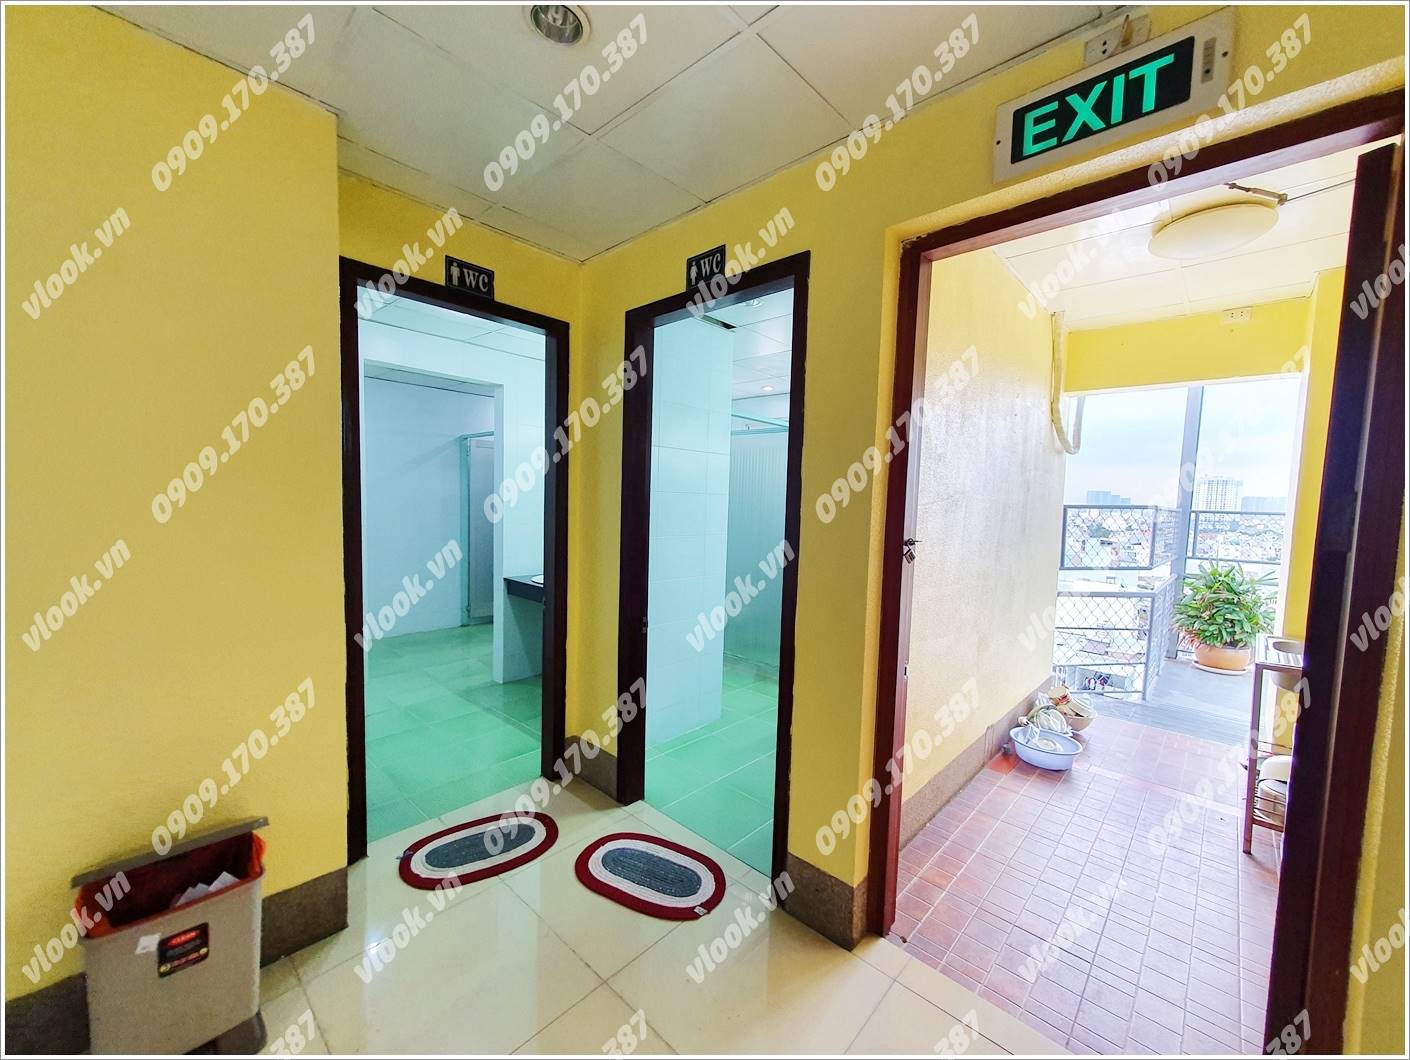 Cao ốc cho thuê văn phòng tòa nhà Phúc Tấn Nguyên Building, Nguyễn Thị Thập, Quận 7 - vlook.vn